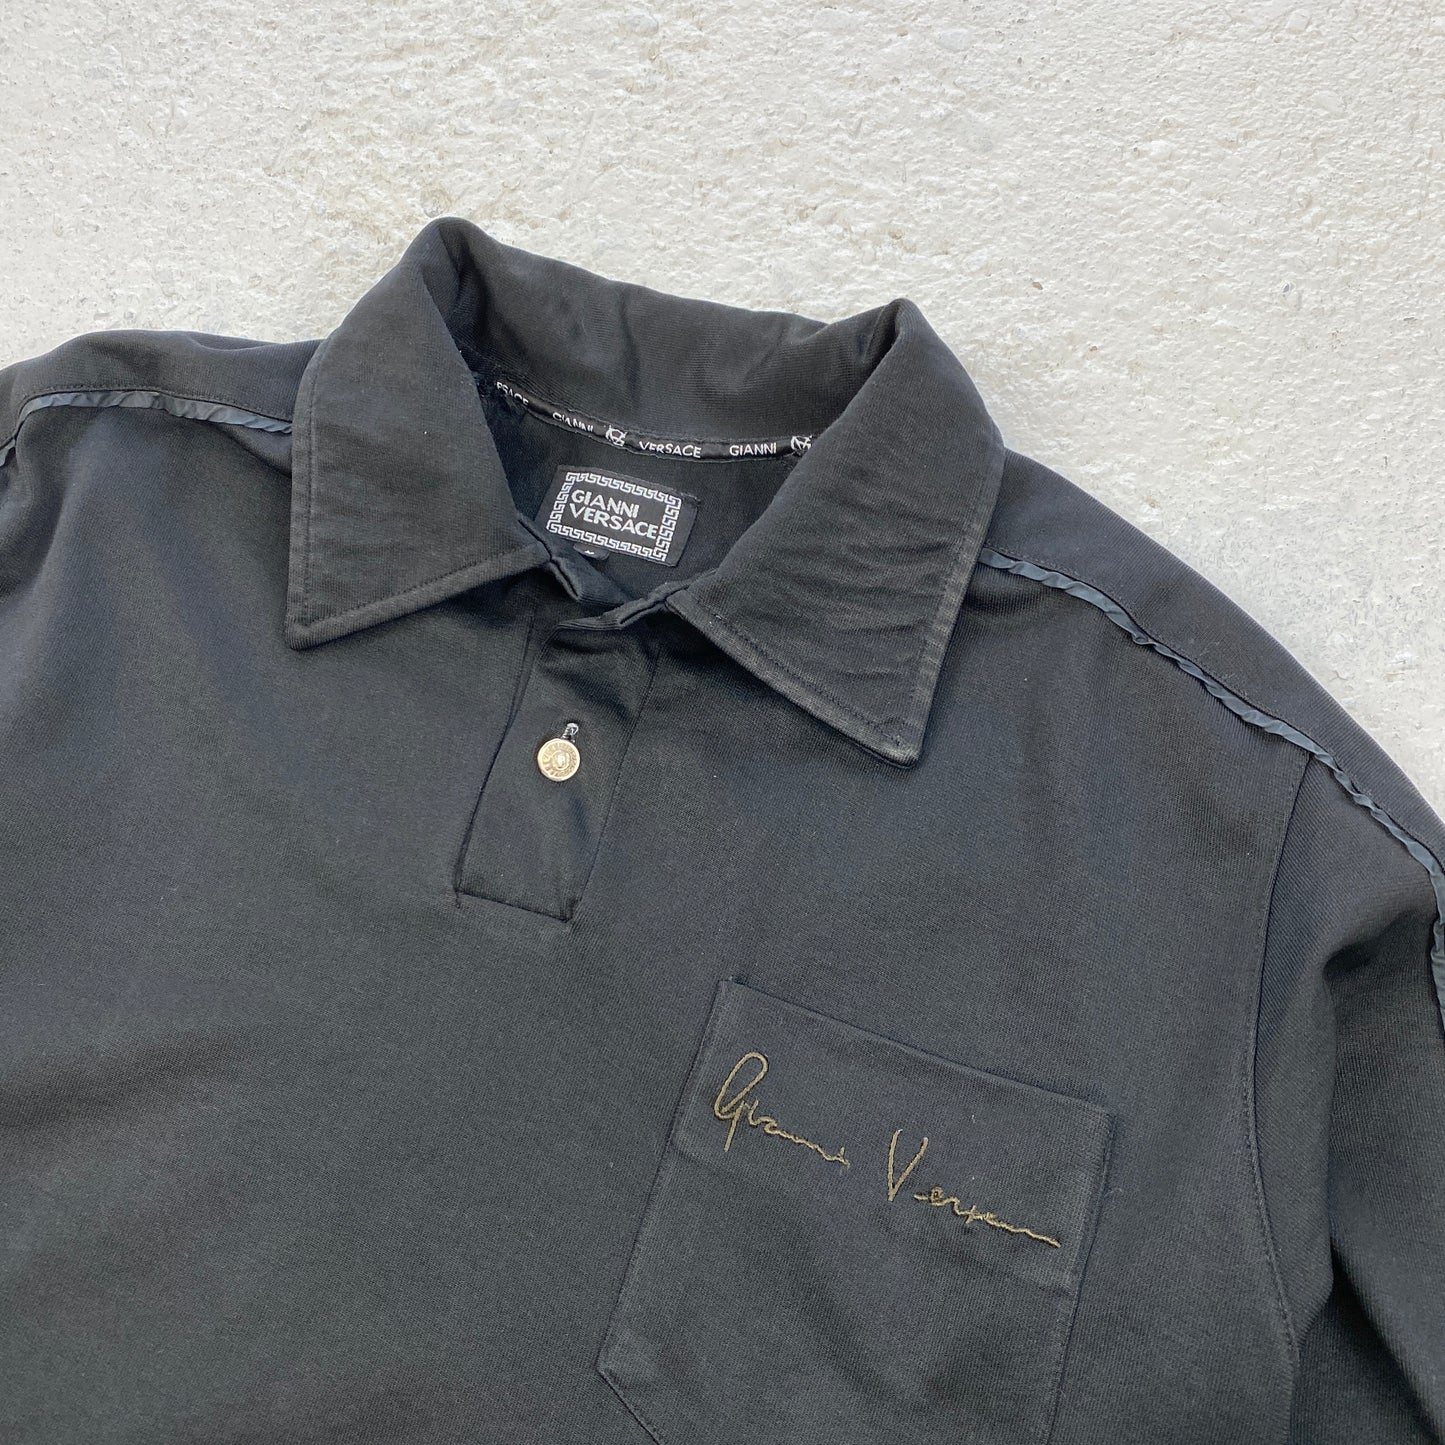 Gianni Versace shirt (S-M)